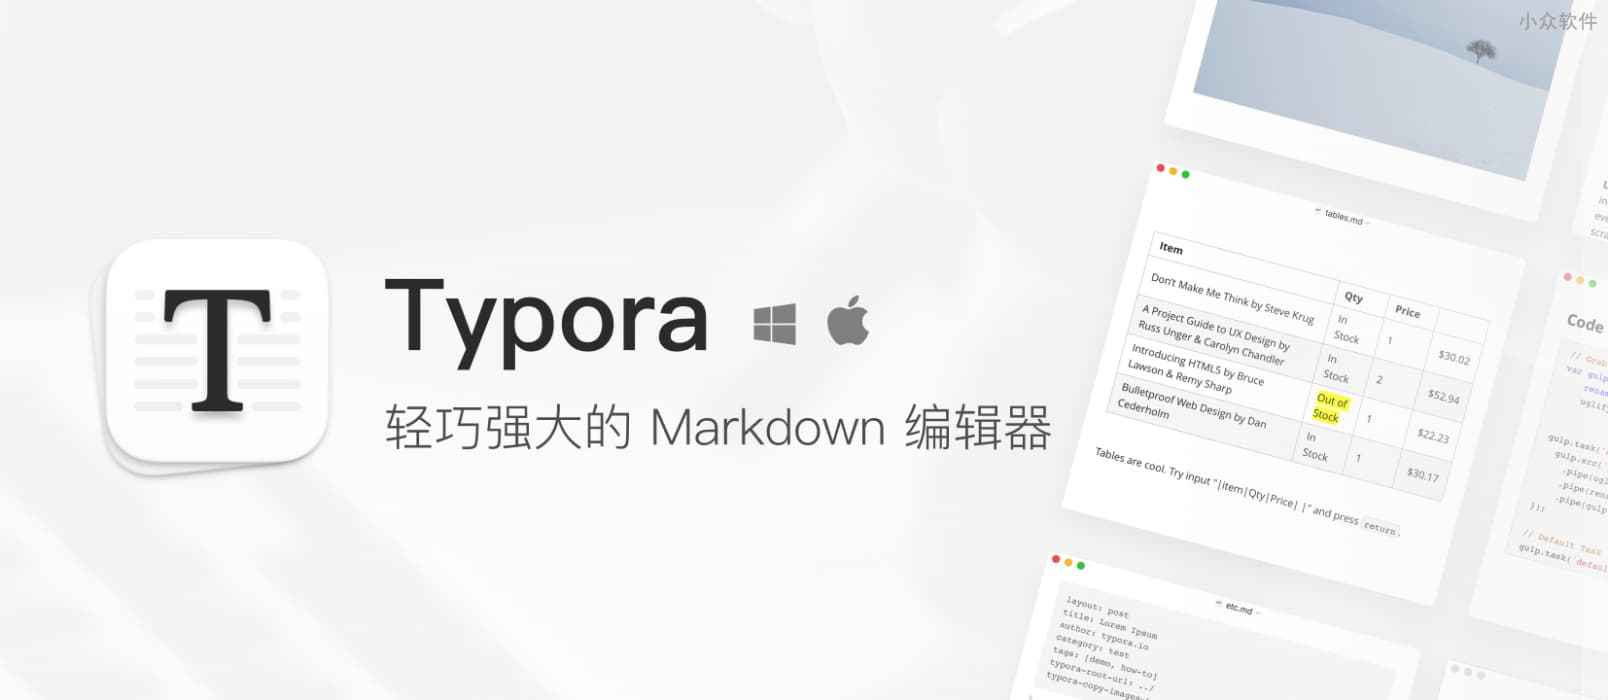 听闻 Typora 加大了对测试版更新提示的力度